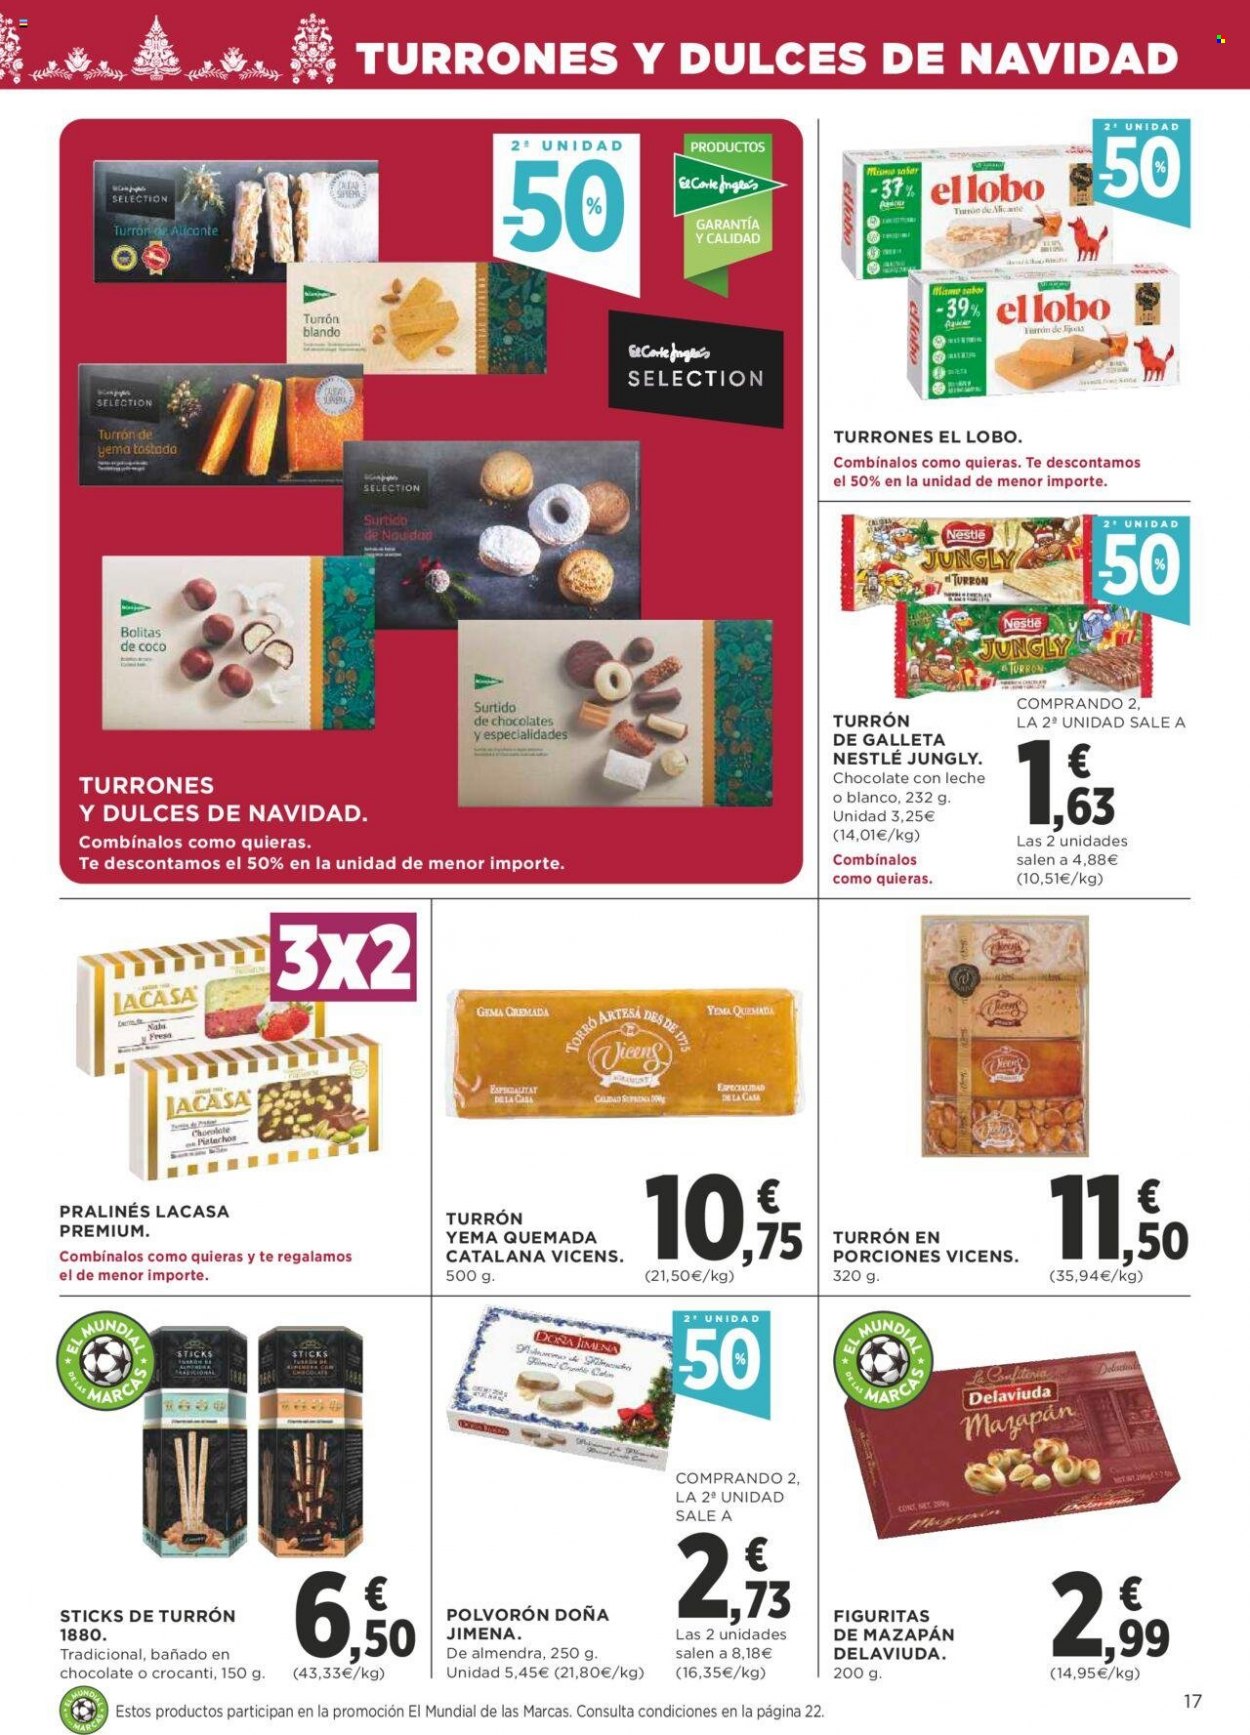 thumbnail - Folleto actual Supercor supermercados - 17/11/22 - 30/11/22 - Ventas - polvorón, Nestlé, praliné, turrón, figuritas de mazapán. Página 17.